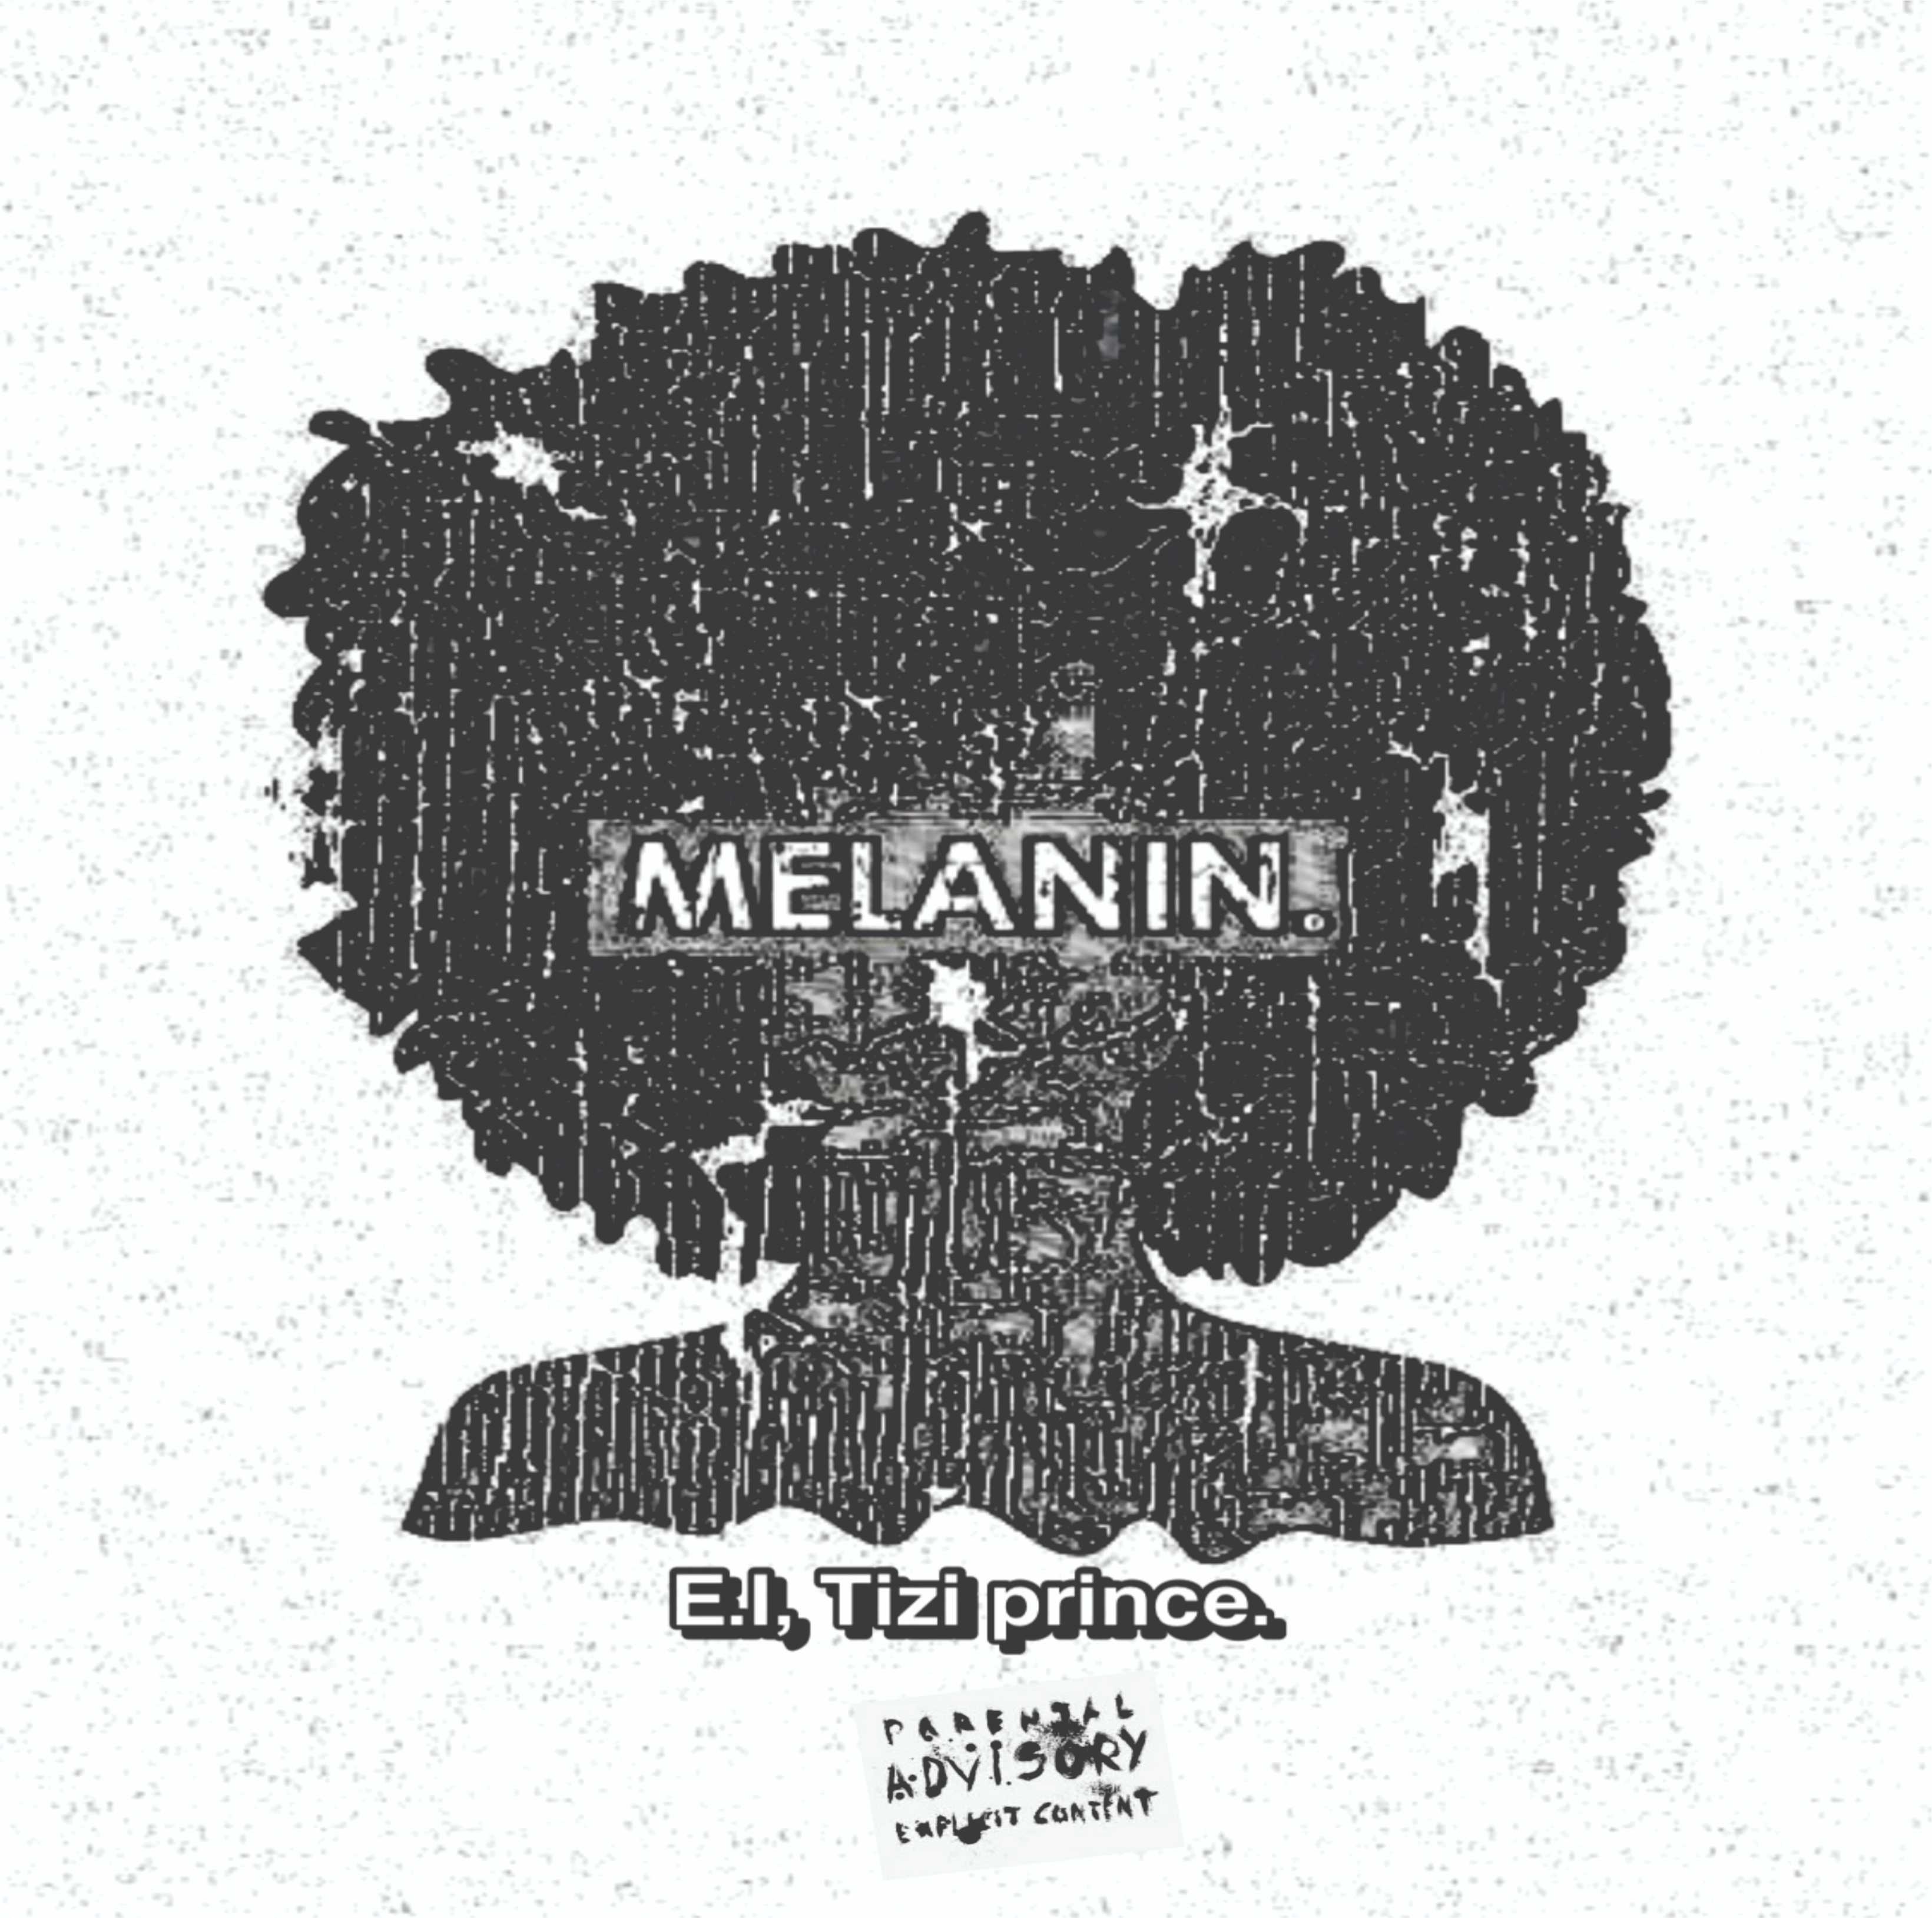 E.I the legend ft tizi prince - melanin cover art